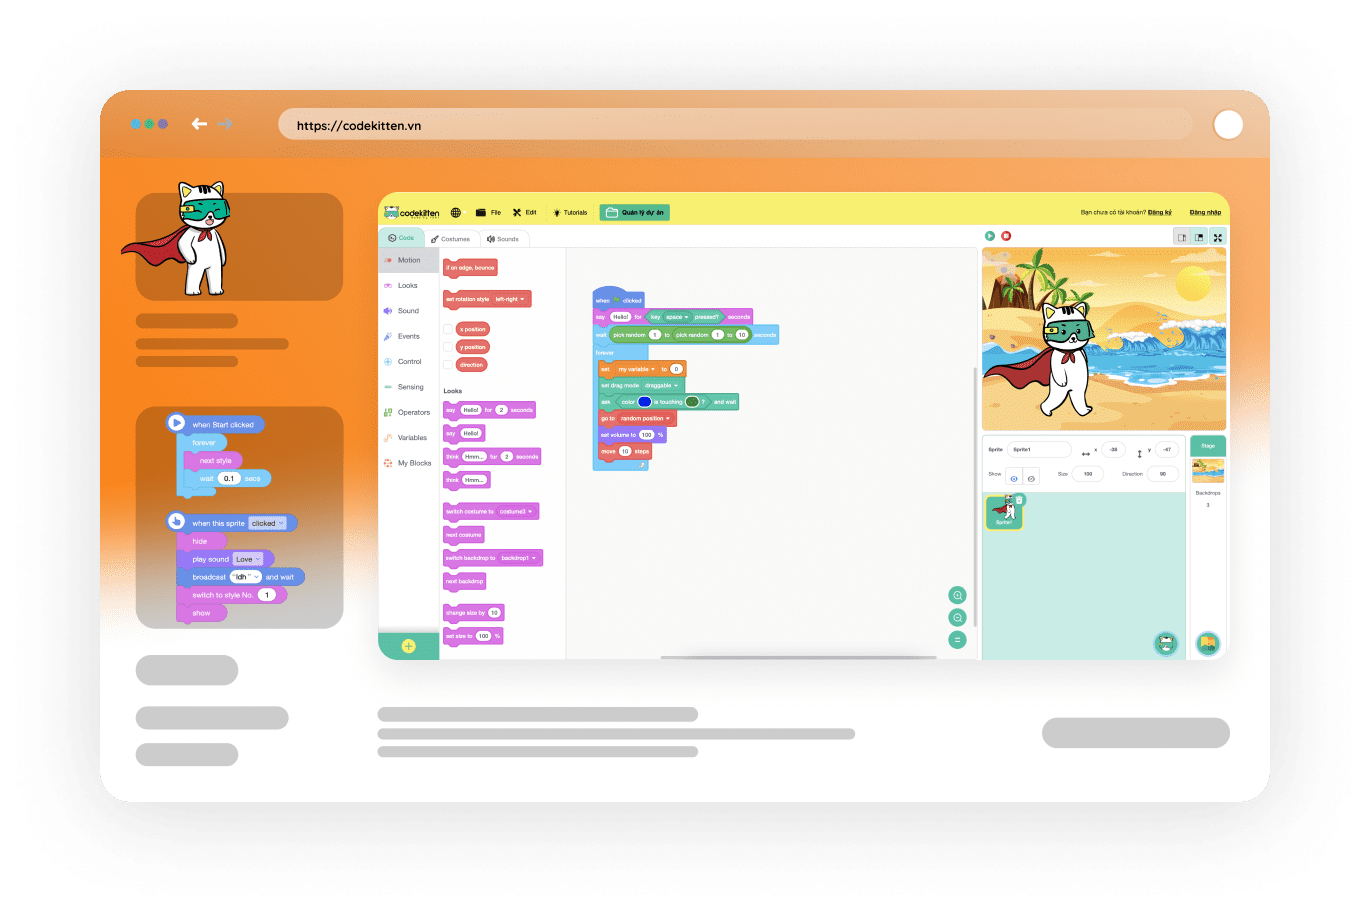 Nền tảng lập trình VN được thiết kế giành riêng cho các em học sinh giúp các em dễ dàng tiếp cận với lập trình một cách thú vị. Drag-and-drop Programming Platform sẽ giúp các em học tập lập trình một cách đơn giản và hiệu quả.